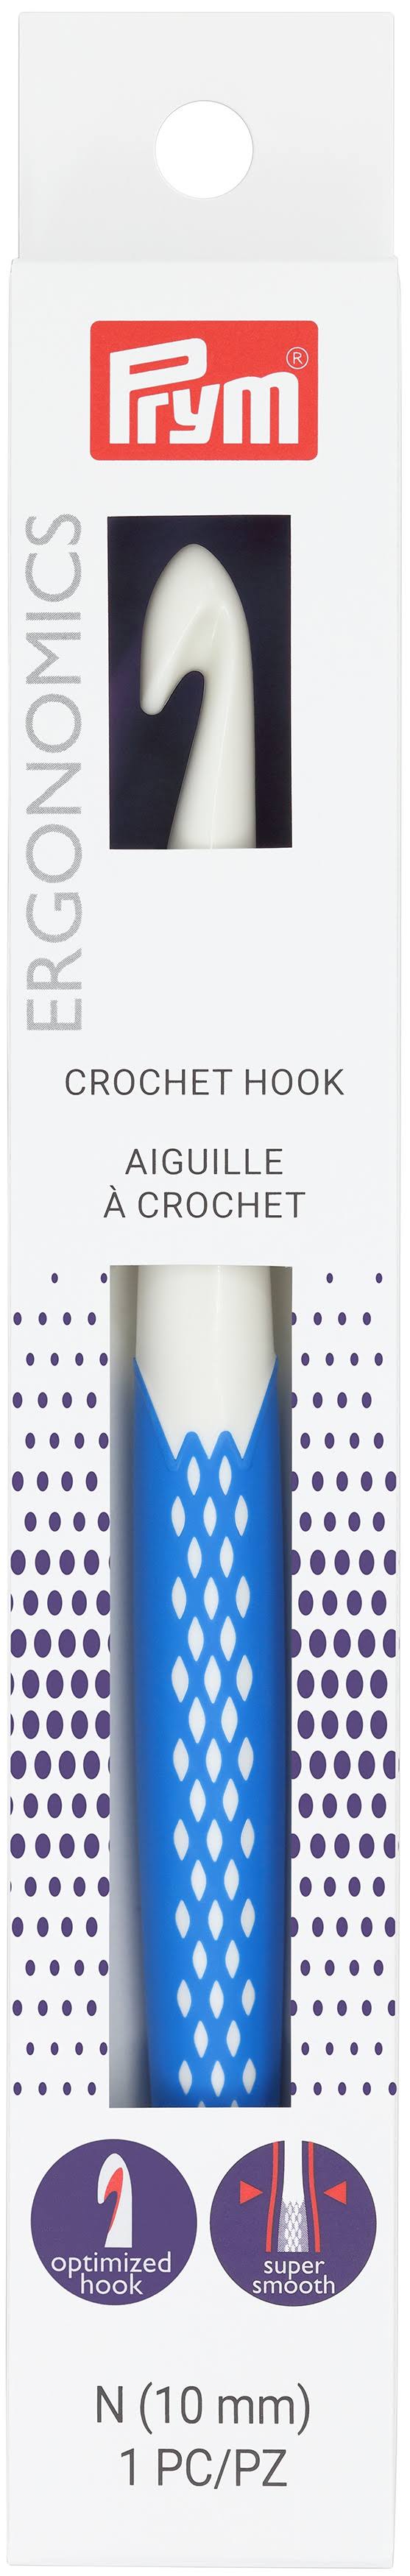 Prym Crochet Hook N, Size N15/10mm